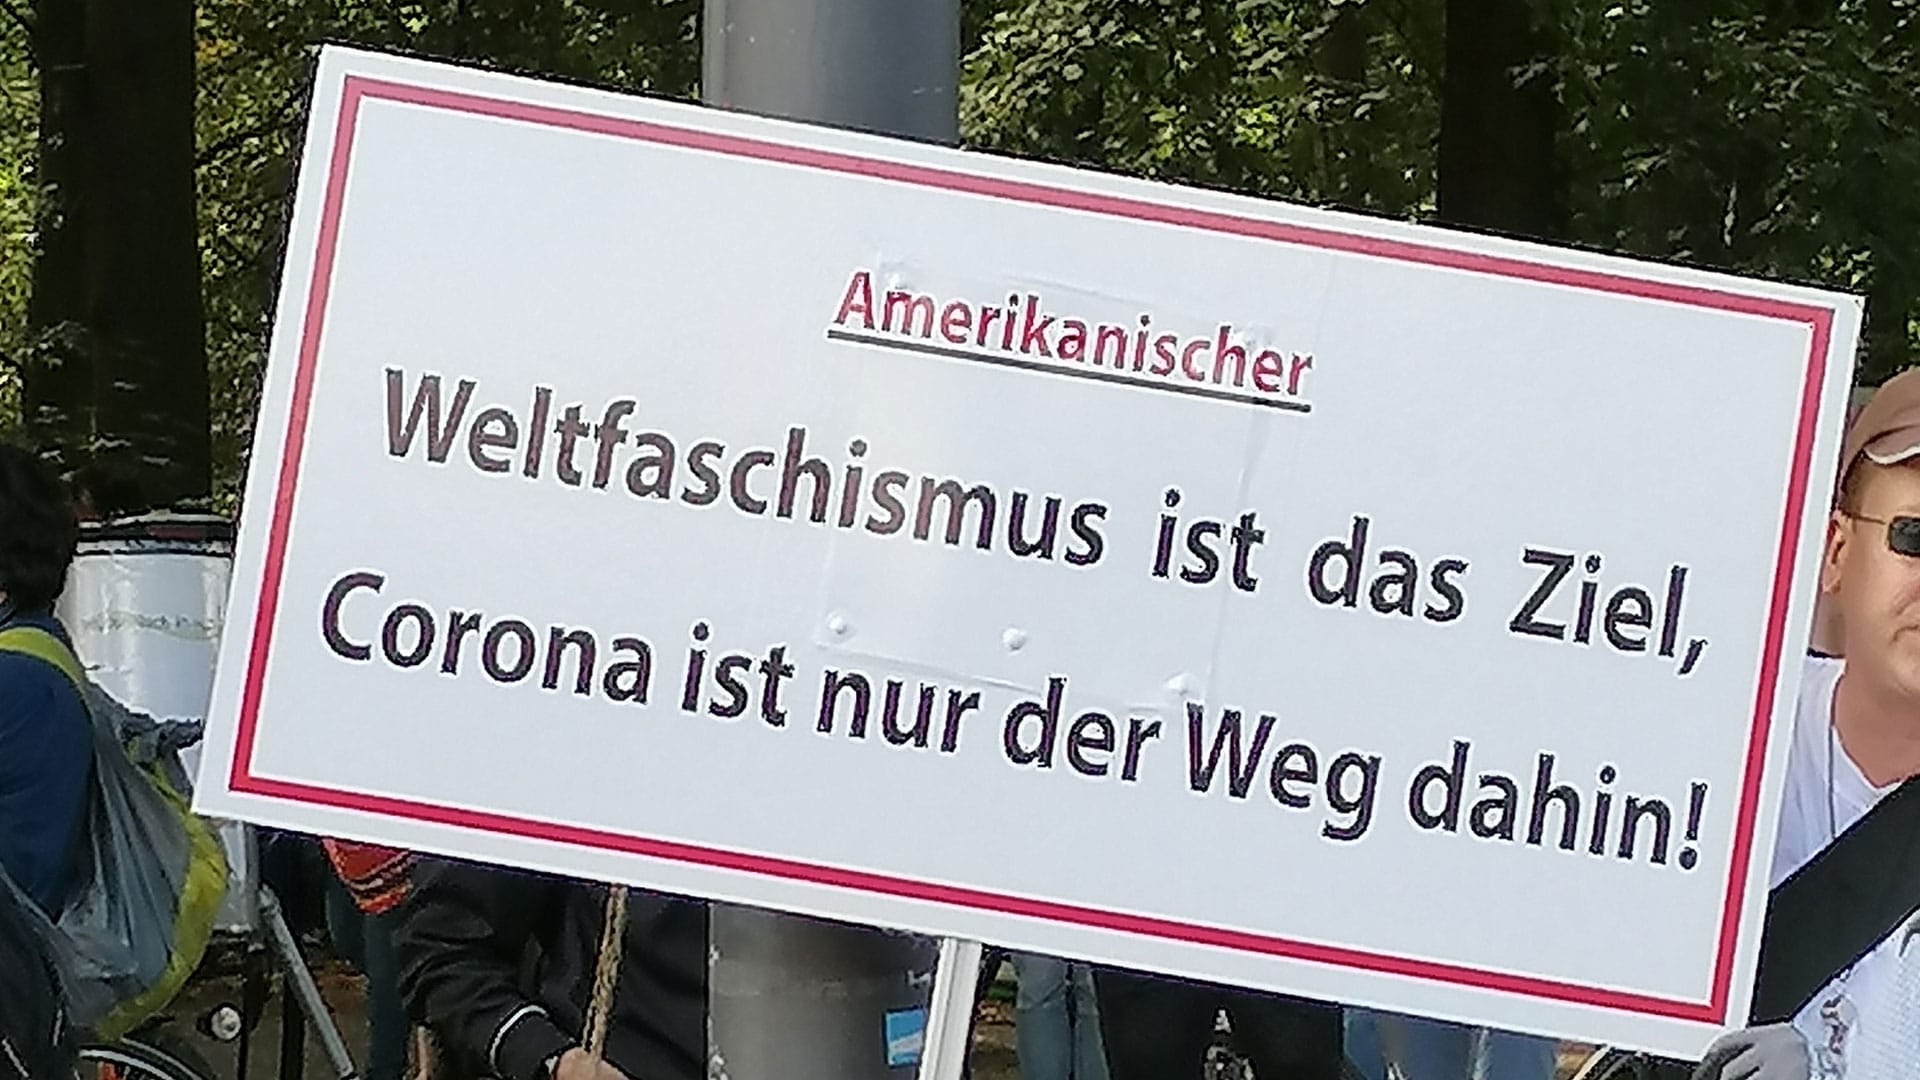 Auf einer Demonstration in Berlin kennt man die vermeintlichen Gründe für die Corona-Pandemie